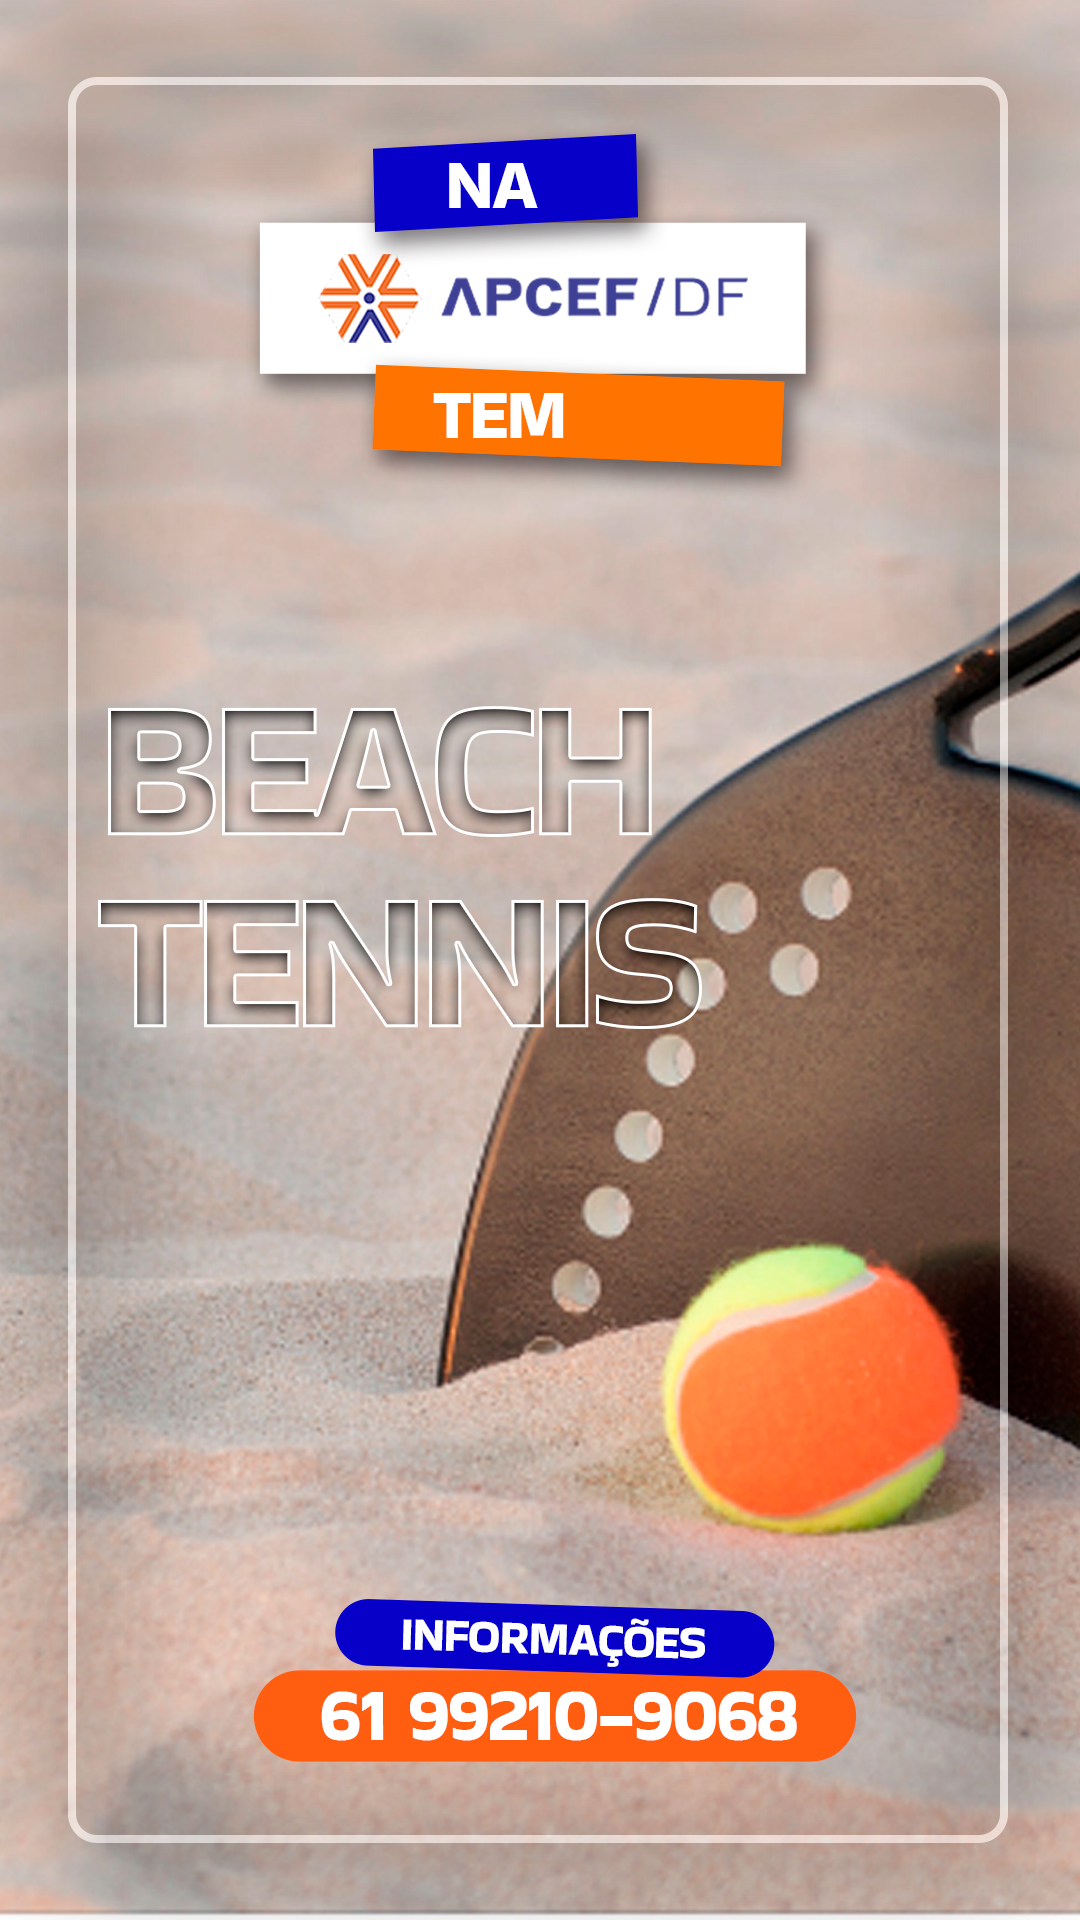 BEACH-TENNIS-1080x1920.jpg